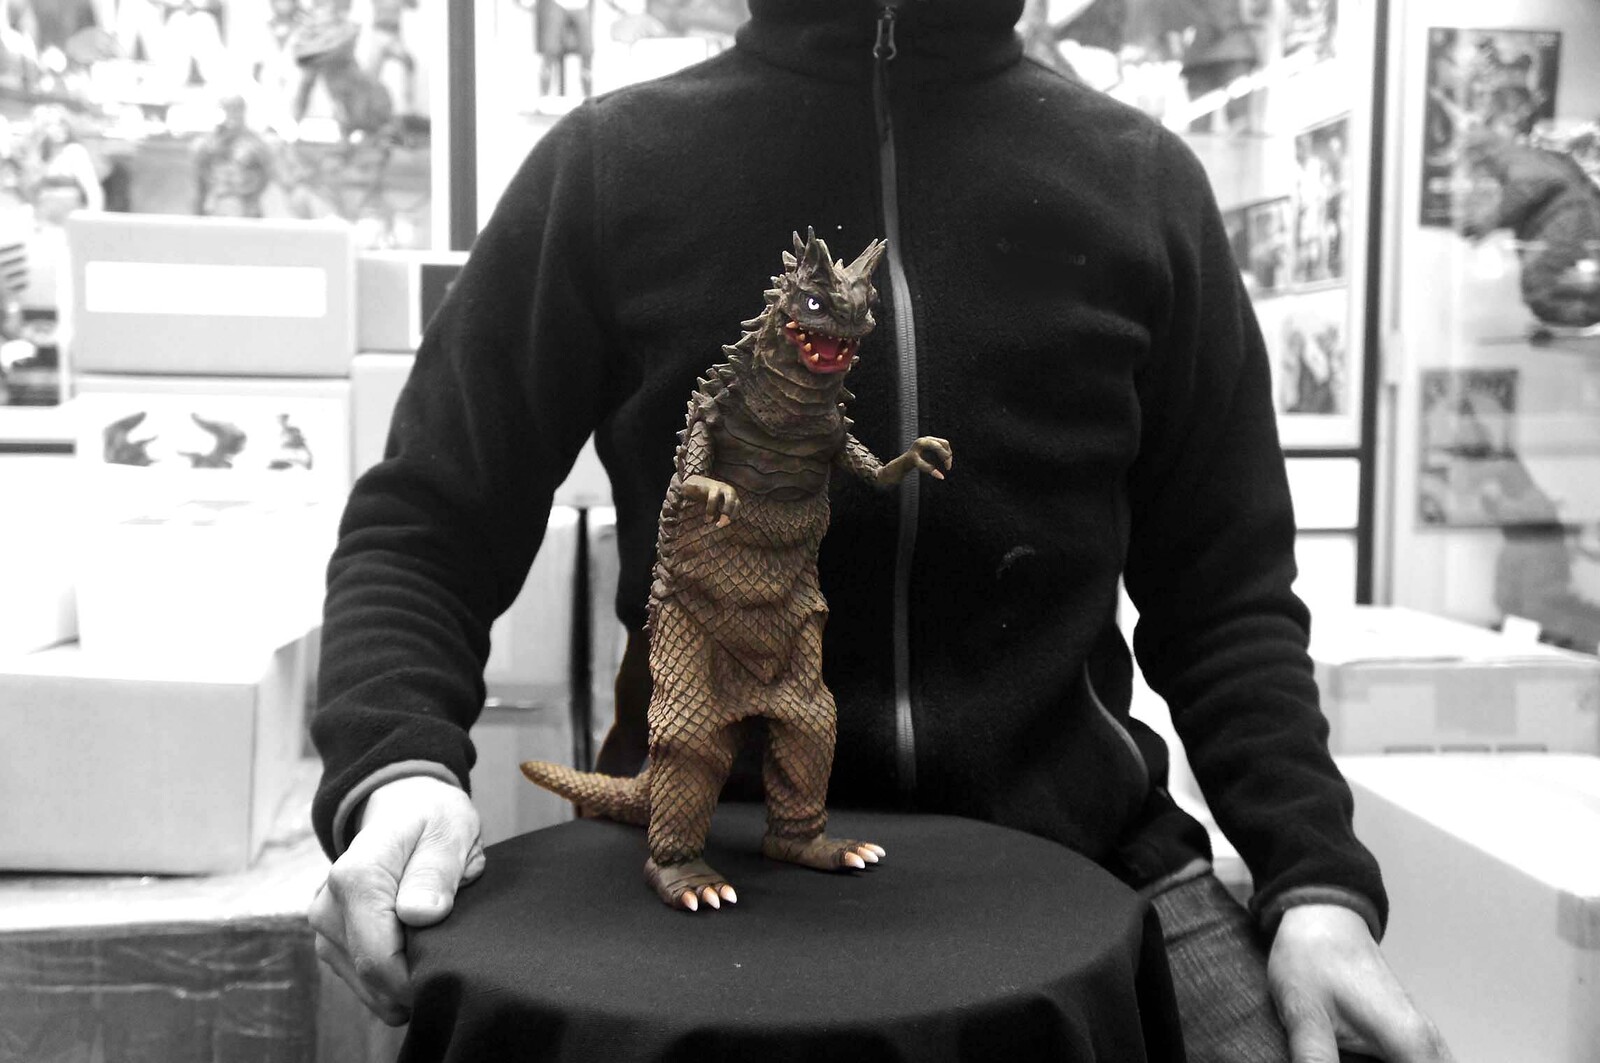 Ultra Kaiju Bemular Art Statue 宇宙怪獣 ベムラー
https://www.solidart.club/